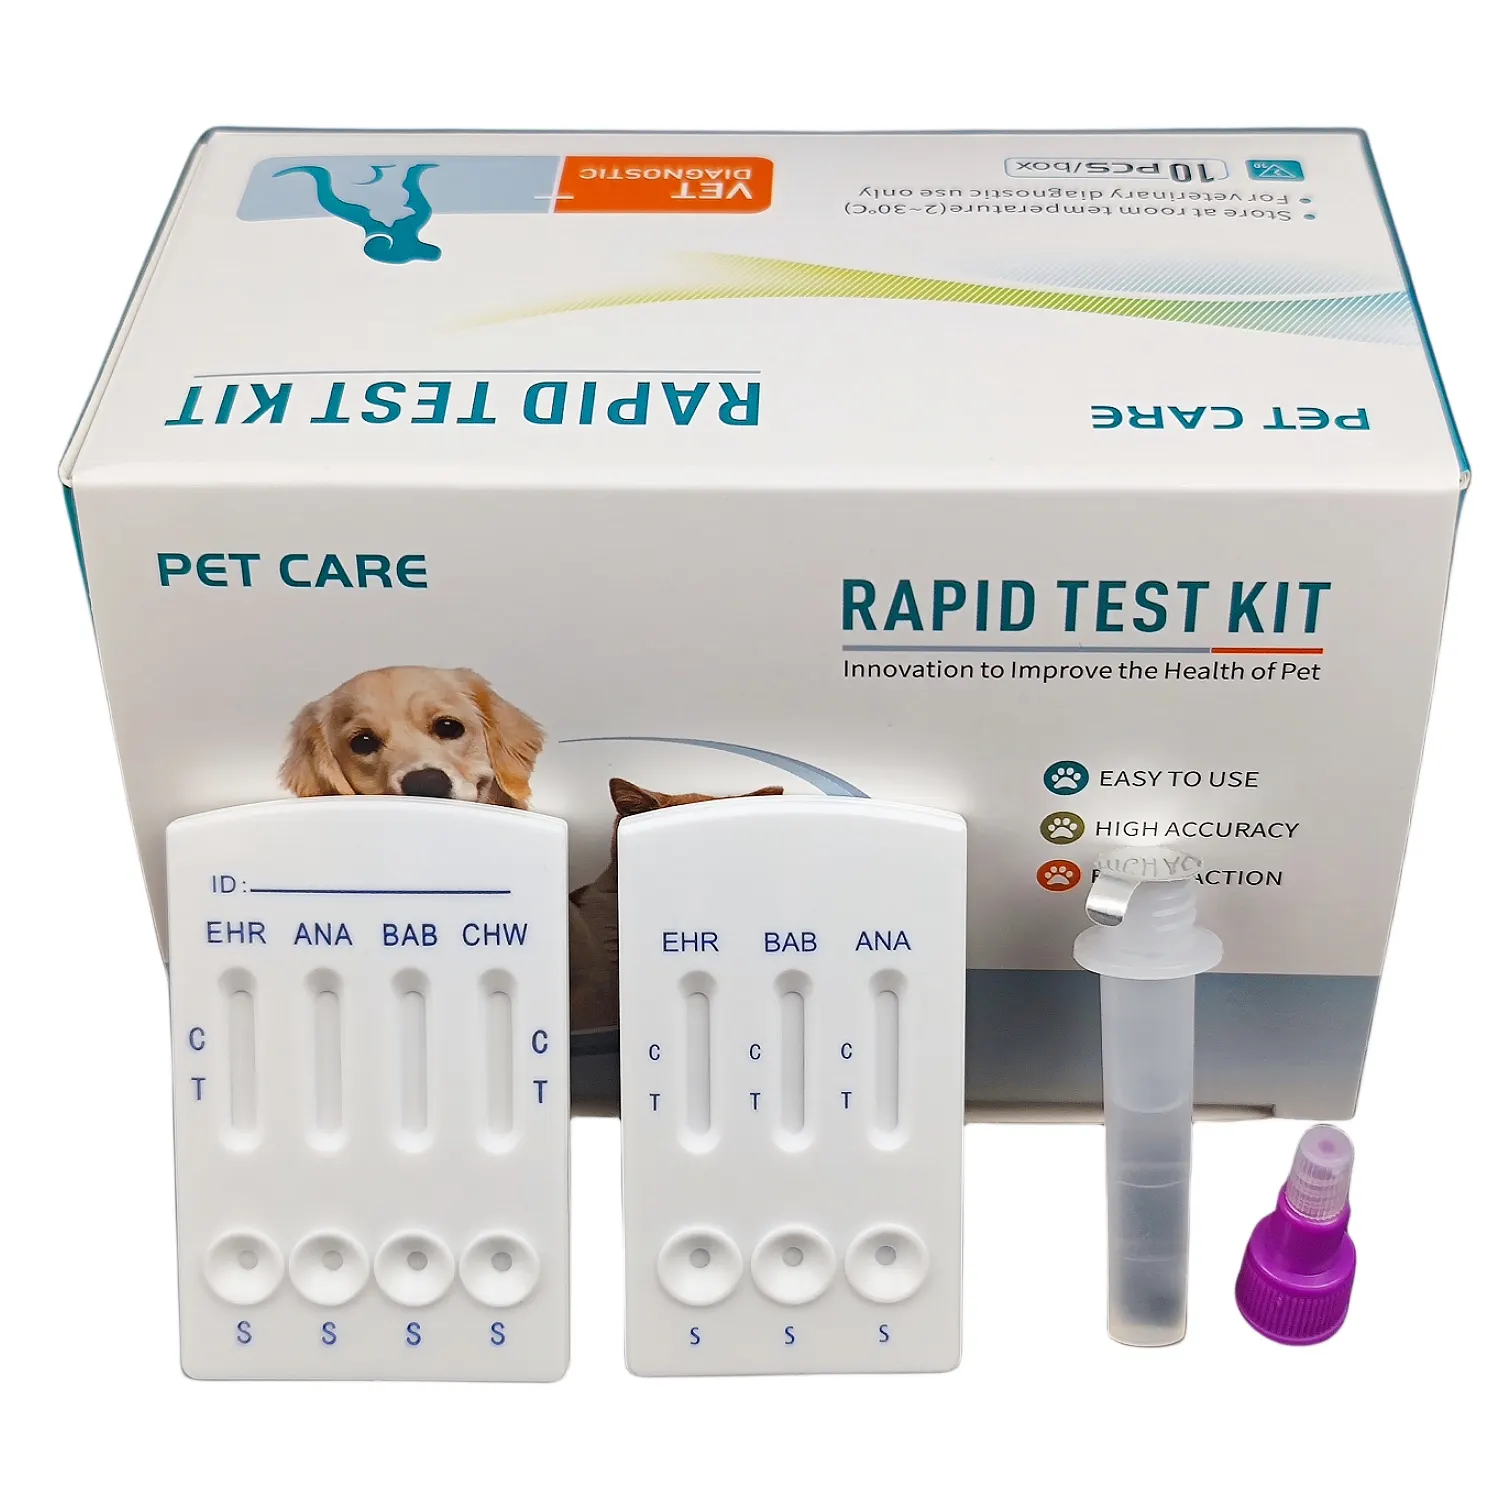 पशु चिकित्सा पालतू जानवर रक्त परजीवियों का परीक्षण, कैनाइन एर्लिचिया, एनाप्लाज्मा, कुत्ते की स्ट्रिप्स के लिए पशु ईएचआर एएनए रैपिड टेस्ट किट